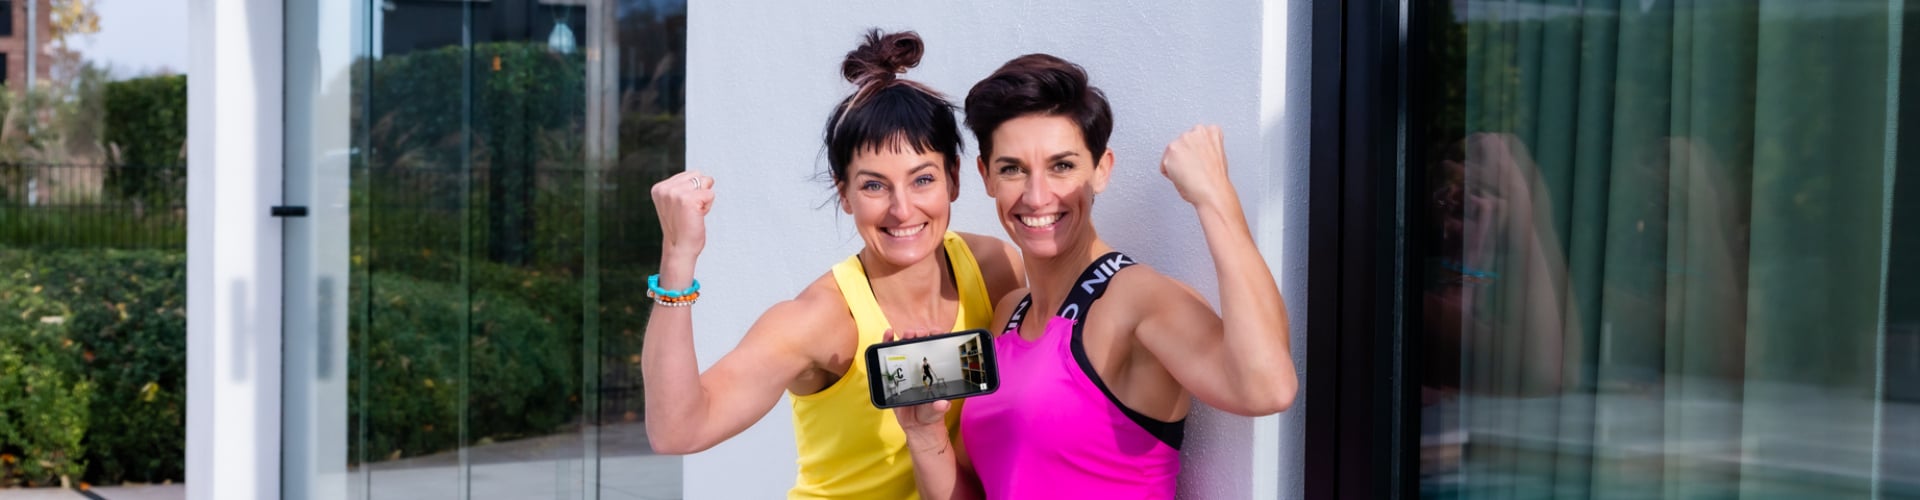 thuis sporten, online workout, workouts voor vrouwen